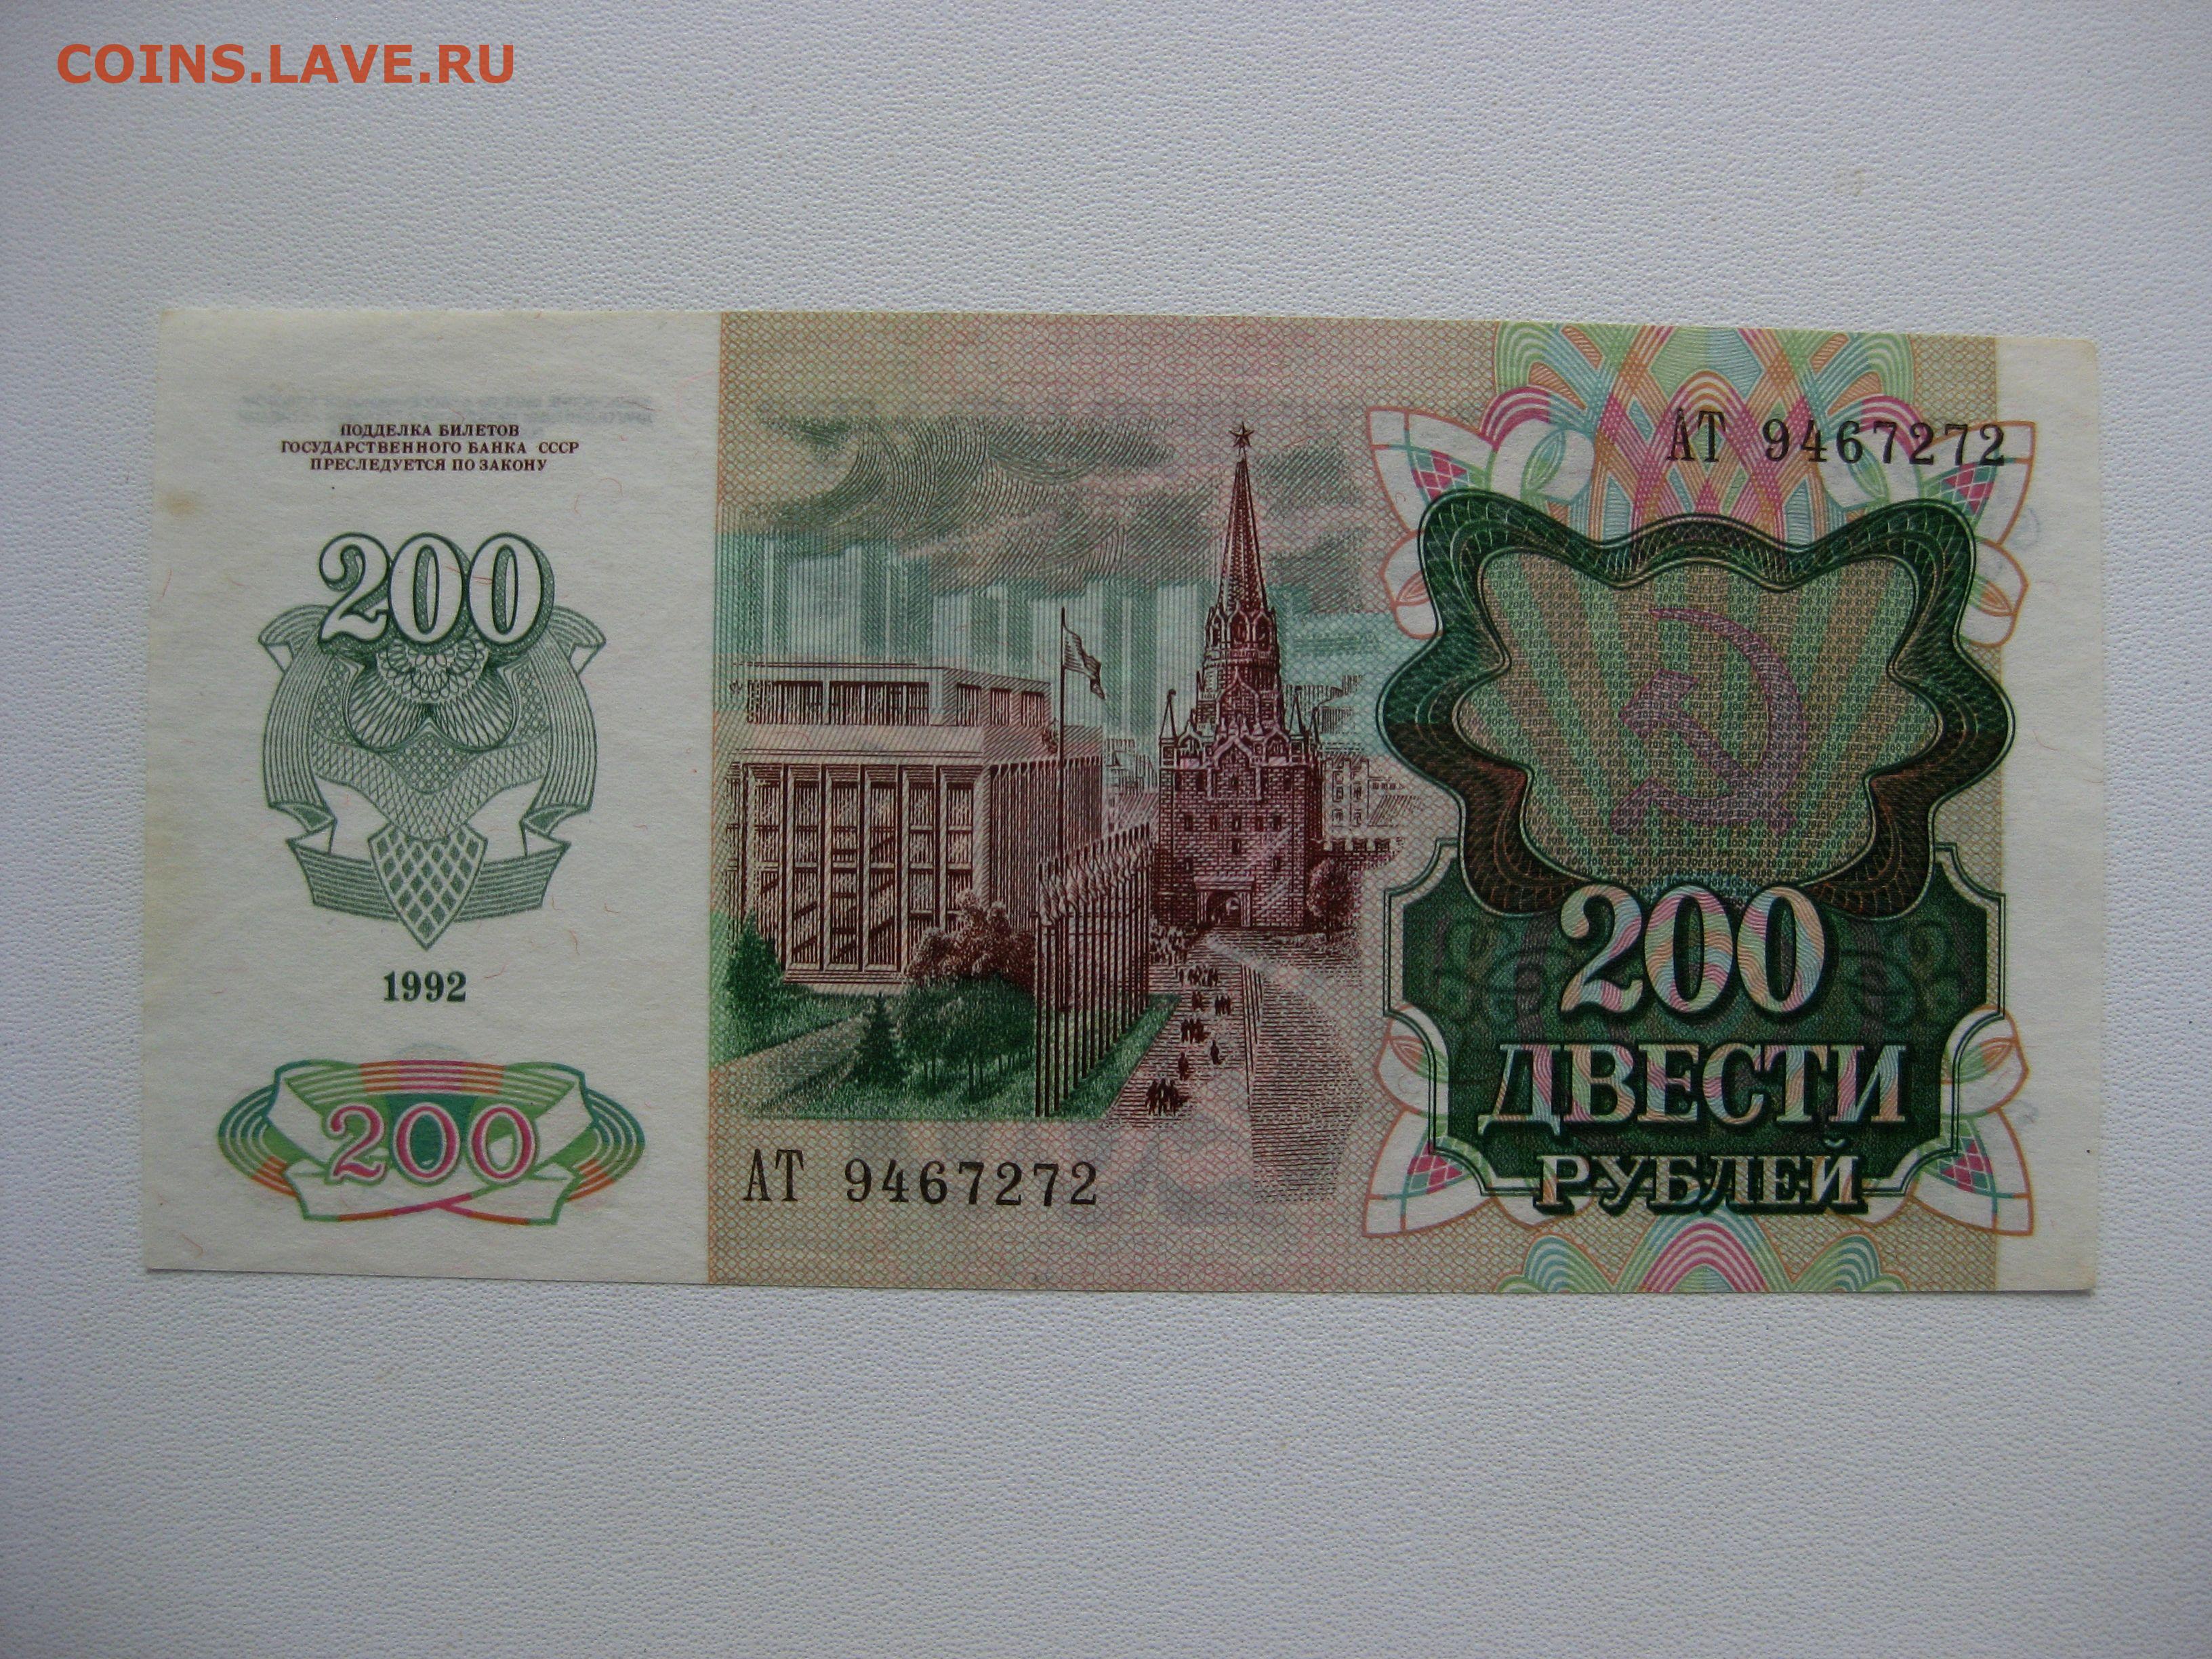 R 200 в рублях. Банкнота 200 рублей 1992. Купюра 200 рублей 1992. Банкноты 200 рублей 1992. Купюра 200 рублей 1992 года.